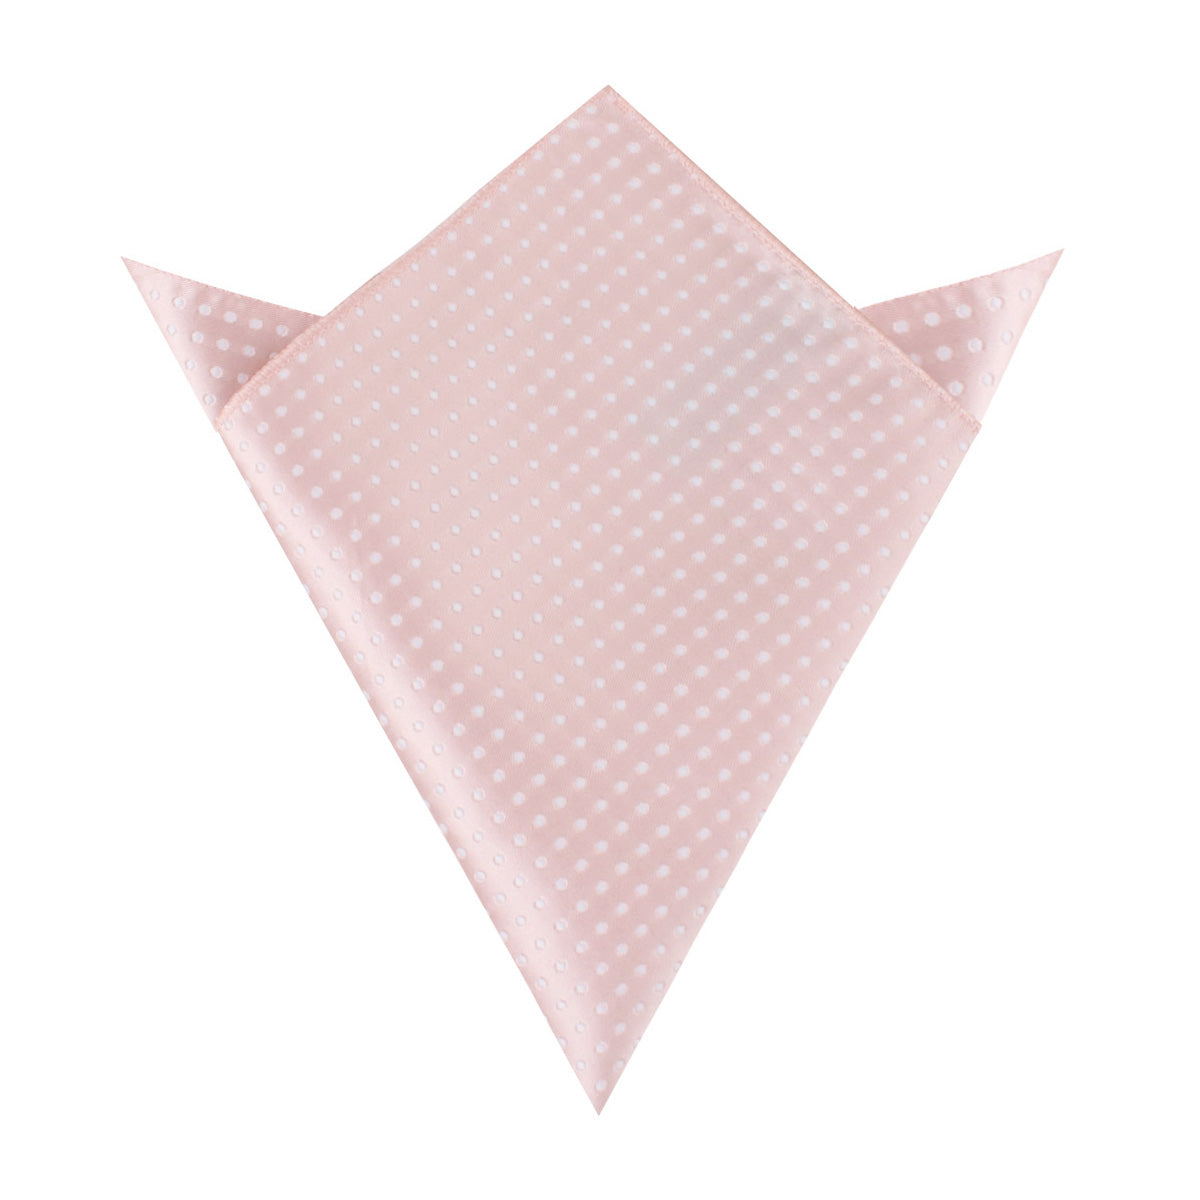 Blush Pink Mini Polka Dots Pocket Square